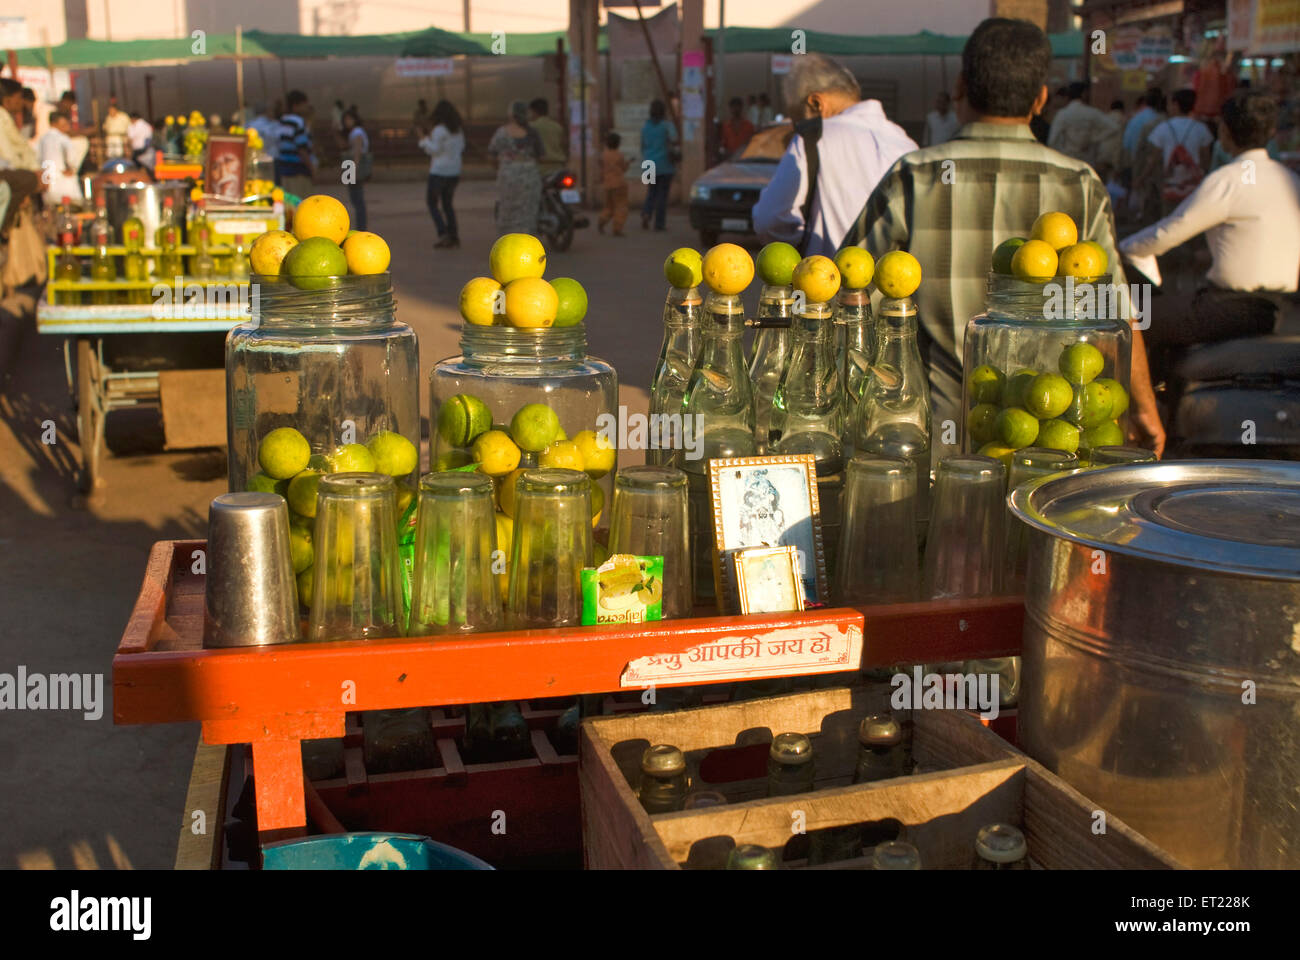 Jugo de limón puesto al borde de la carretera, Anand, Charotar, Gujarat, India, Asia Foto de stock